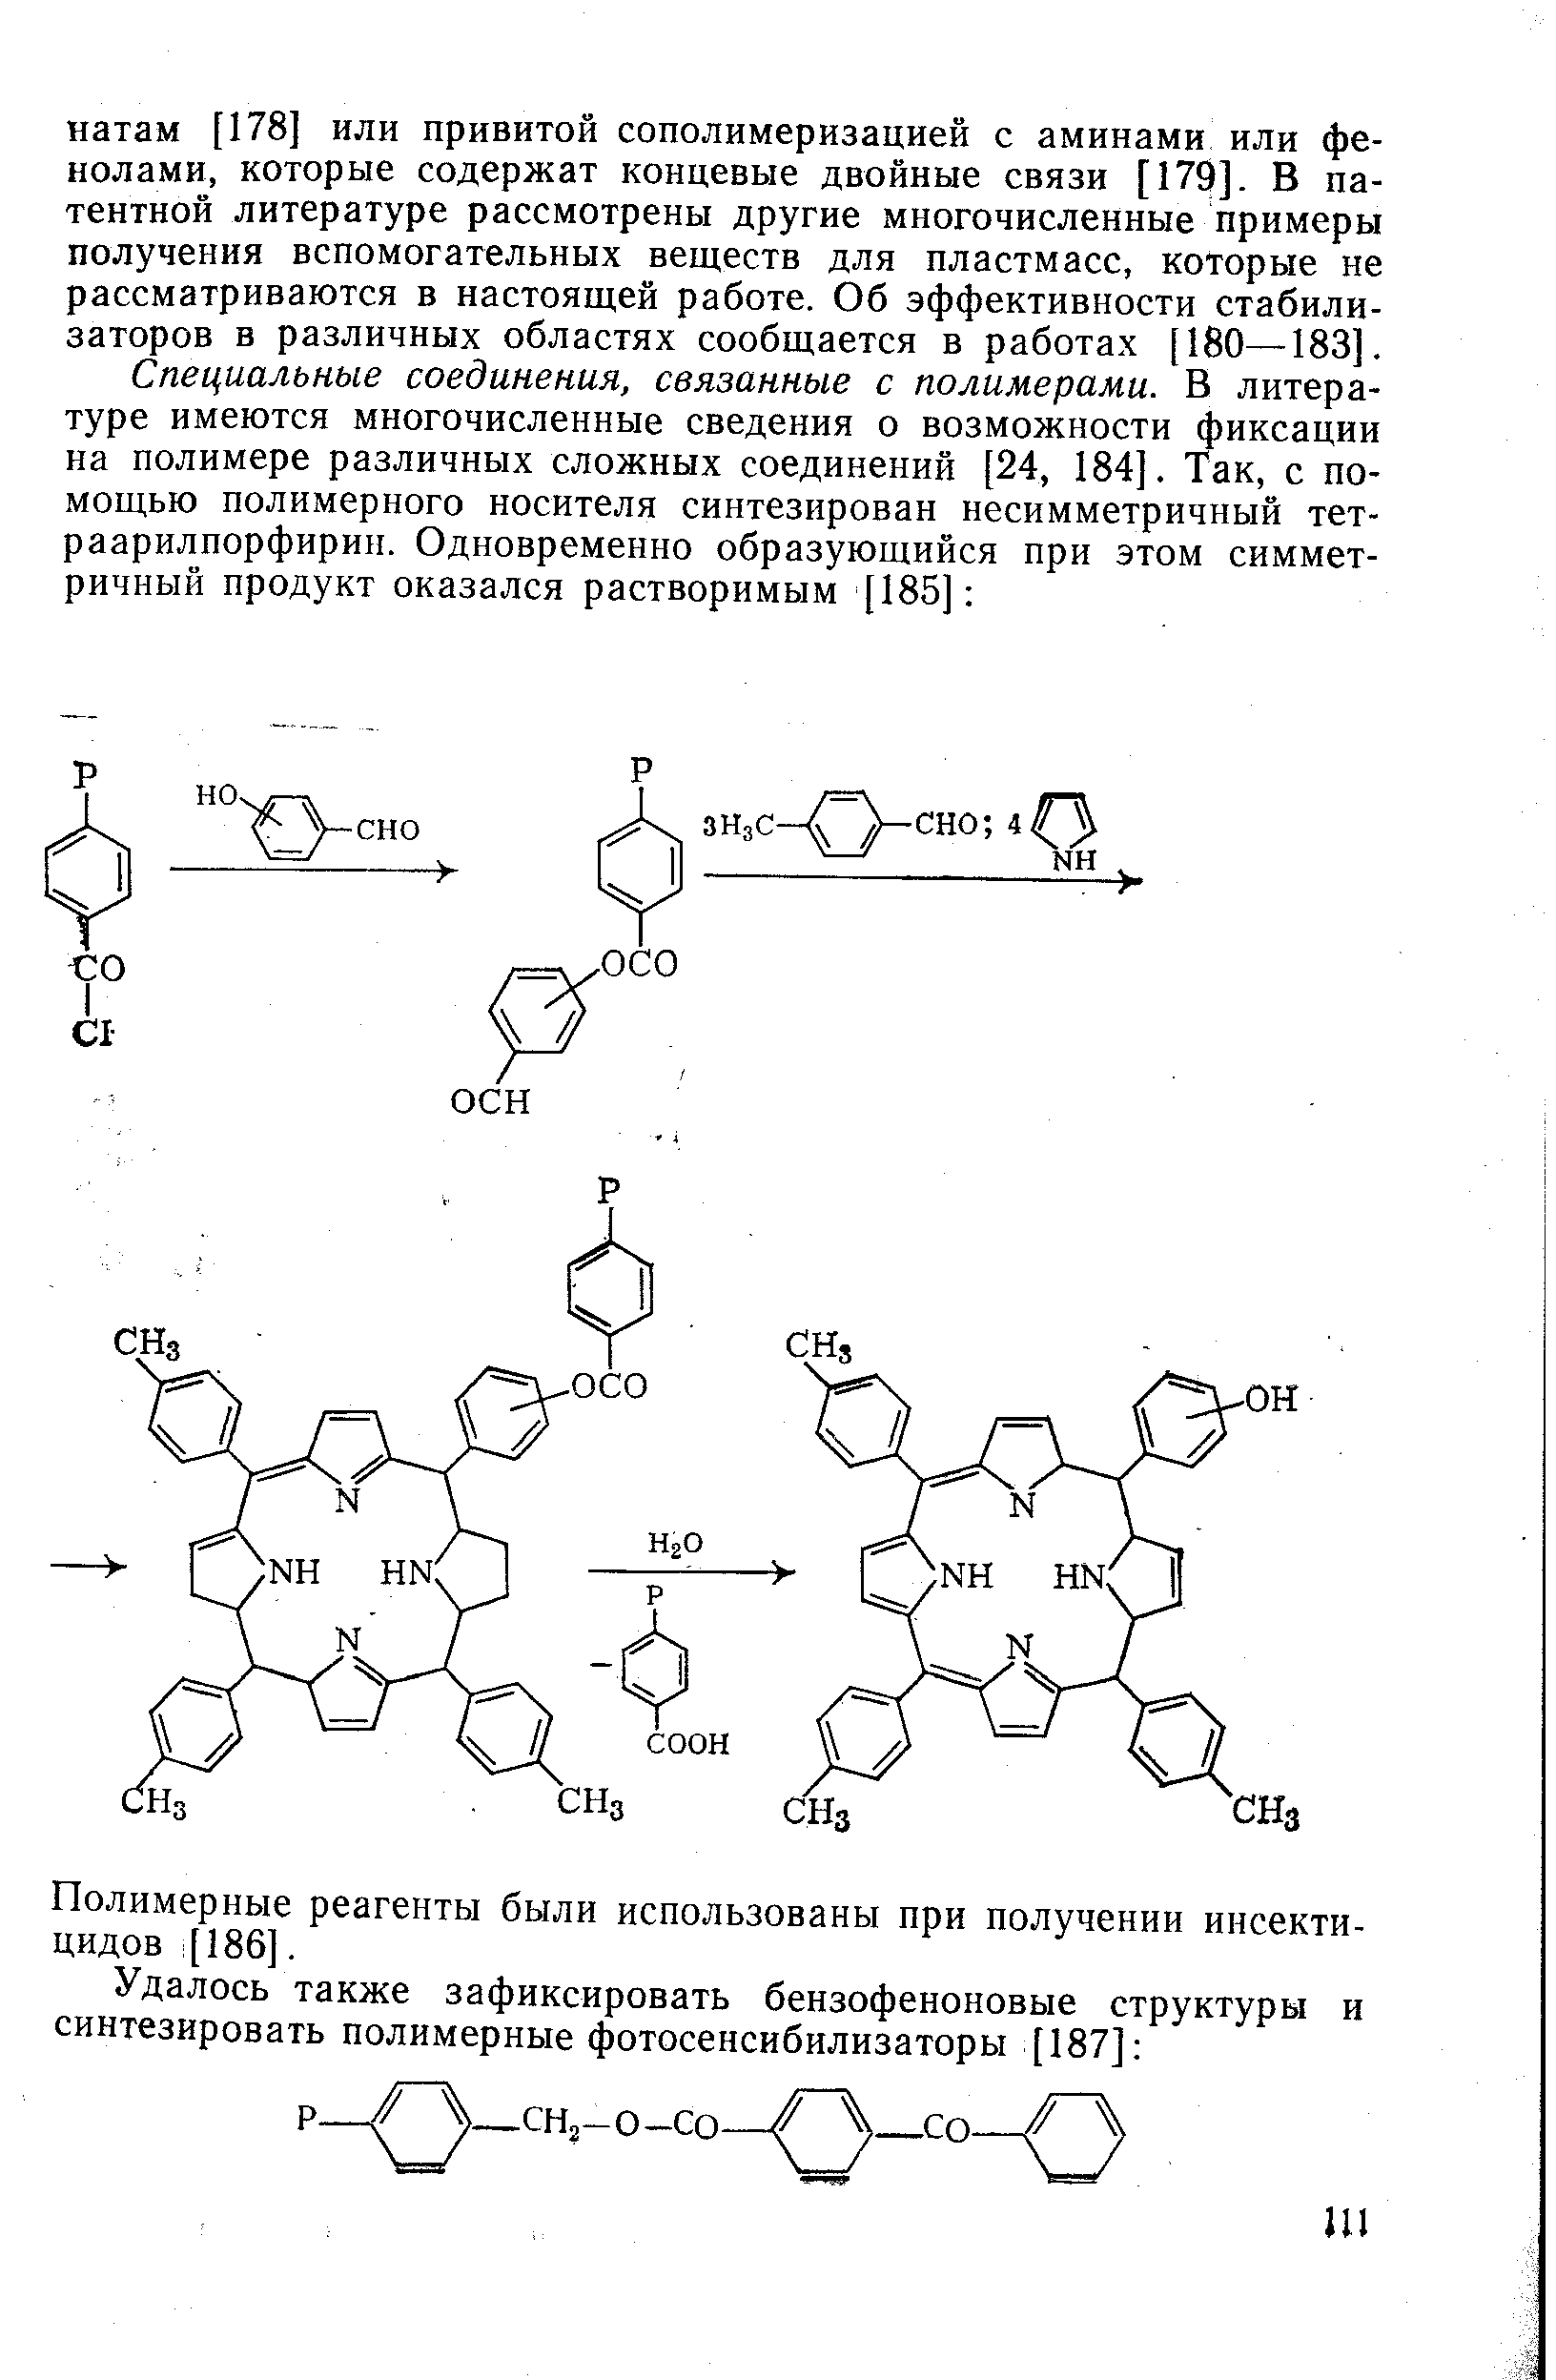 Полимерные реагенты были использованы при получении инсектицидов [186].